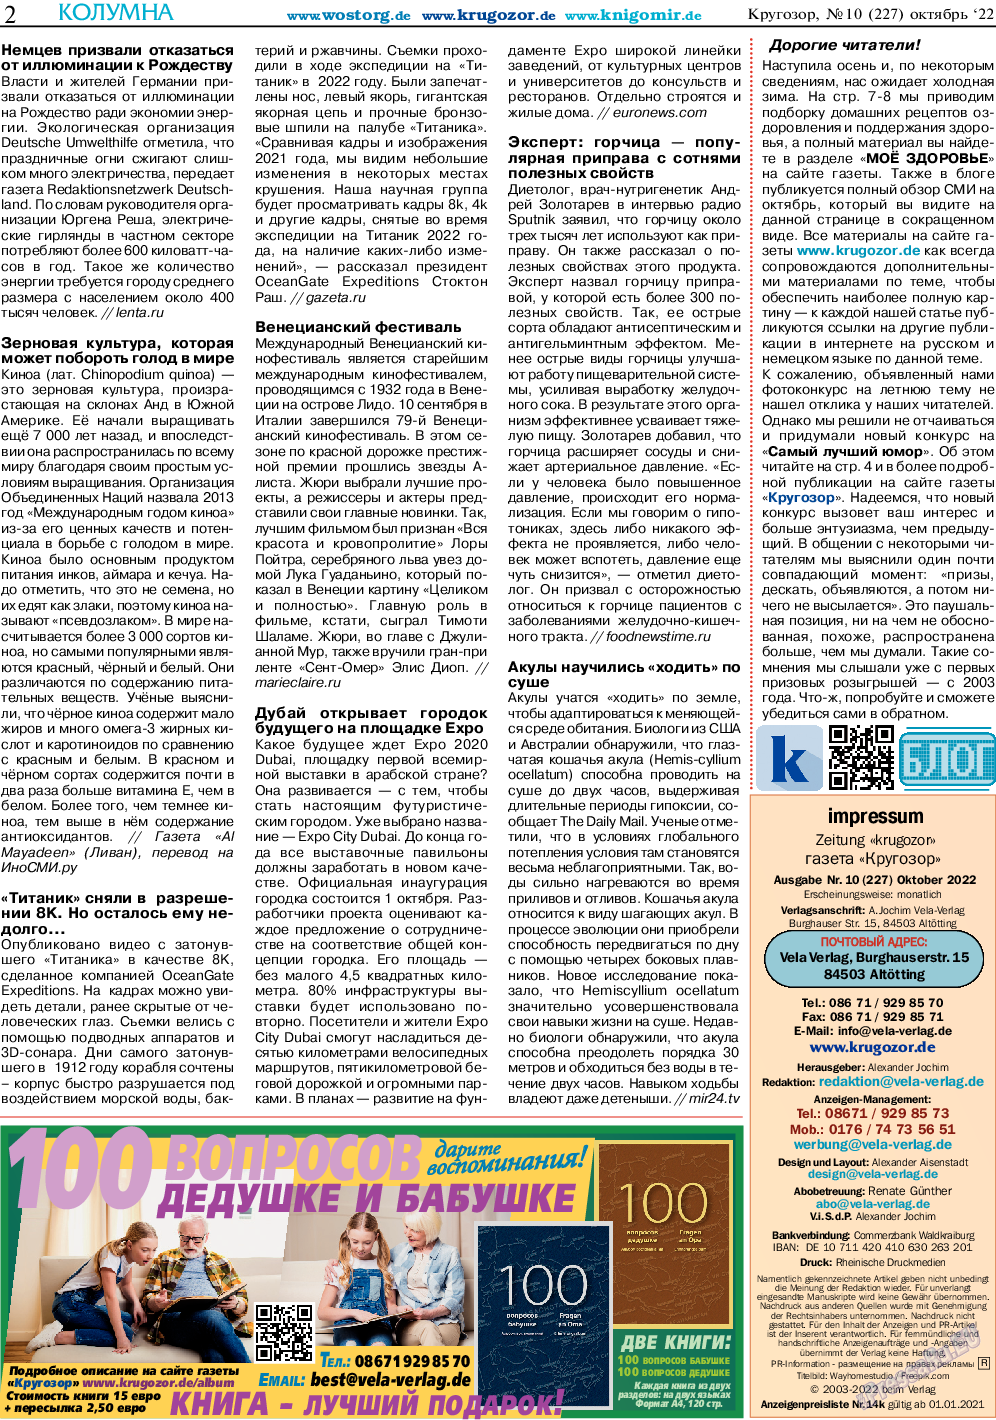 Кругозор, газета. 2022 №10 стр.2